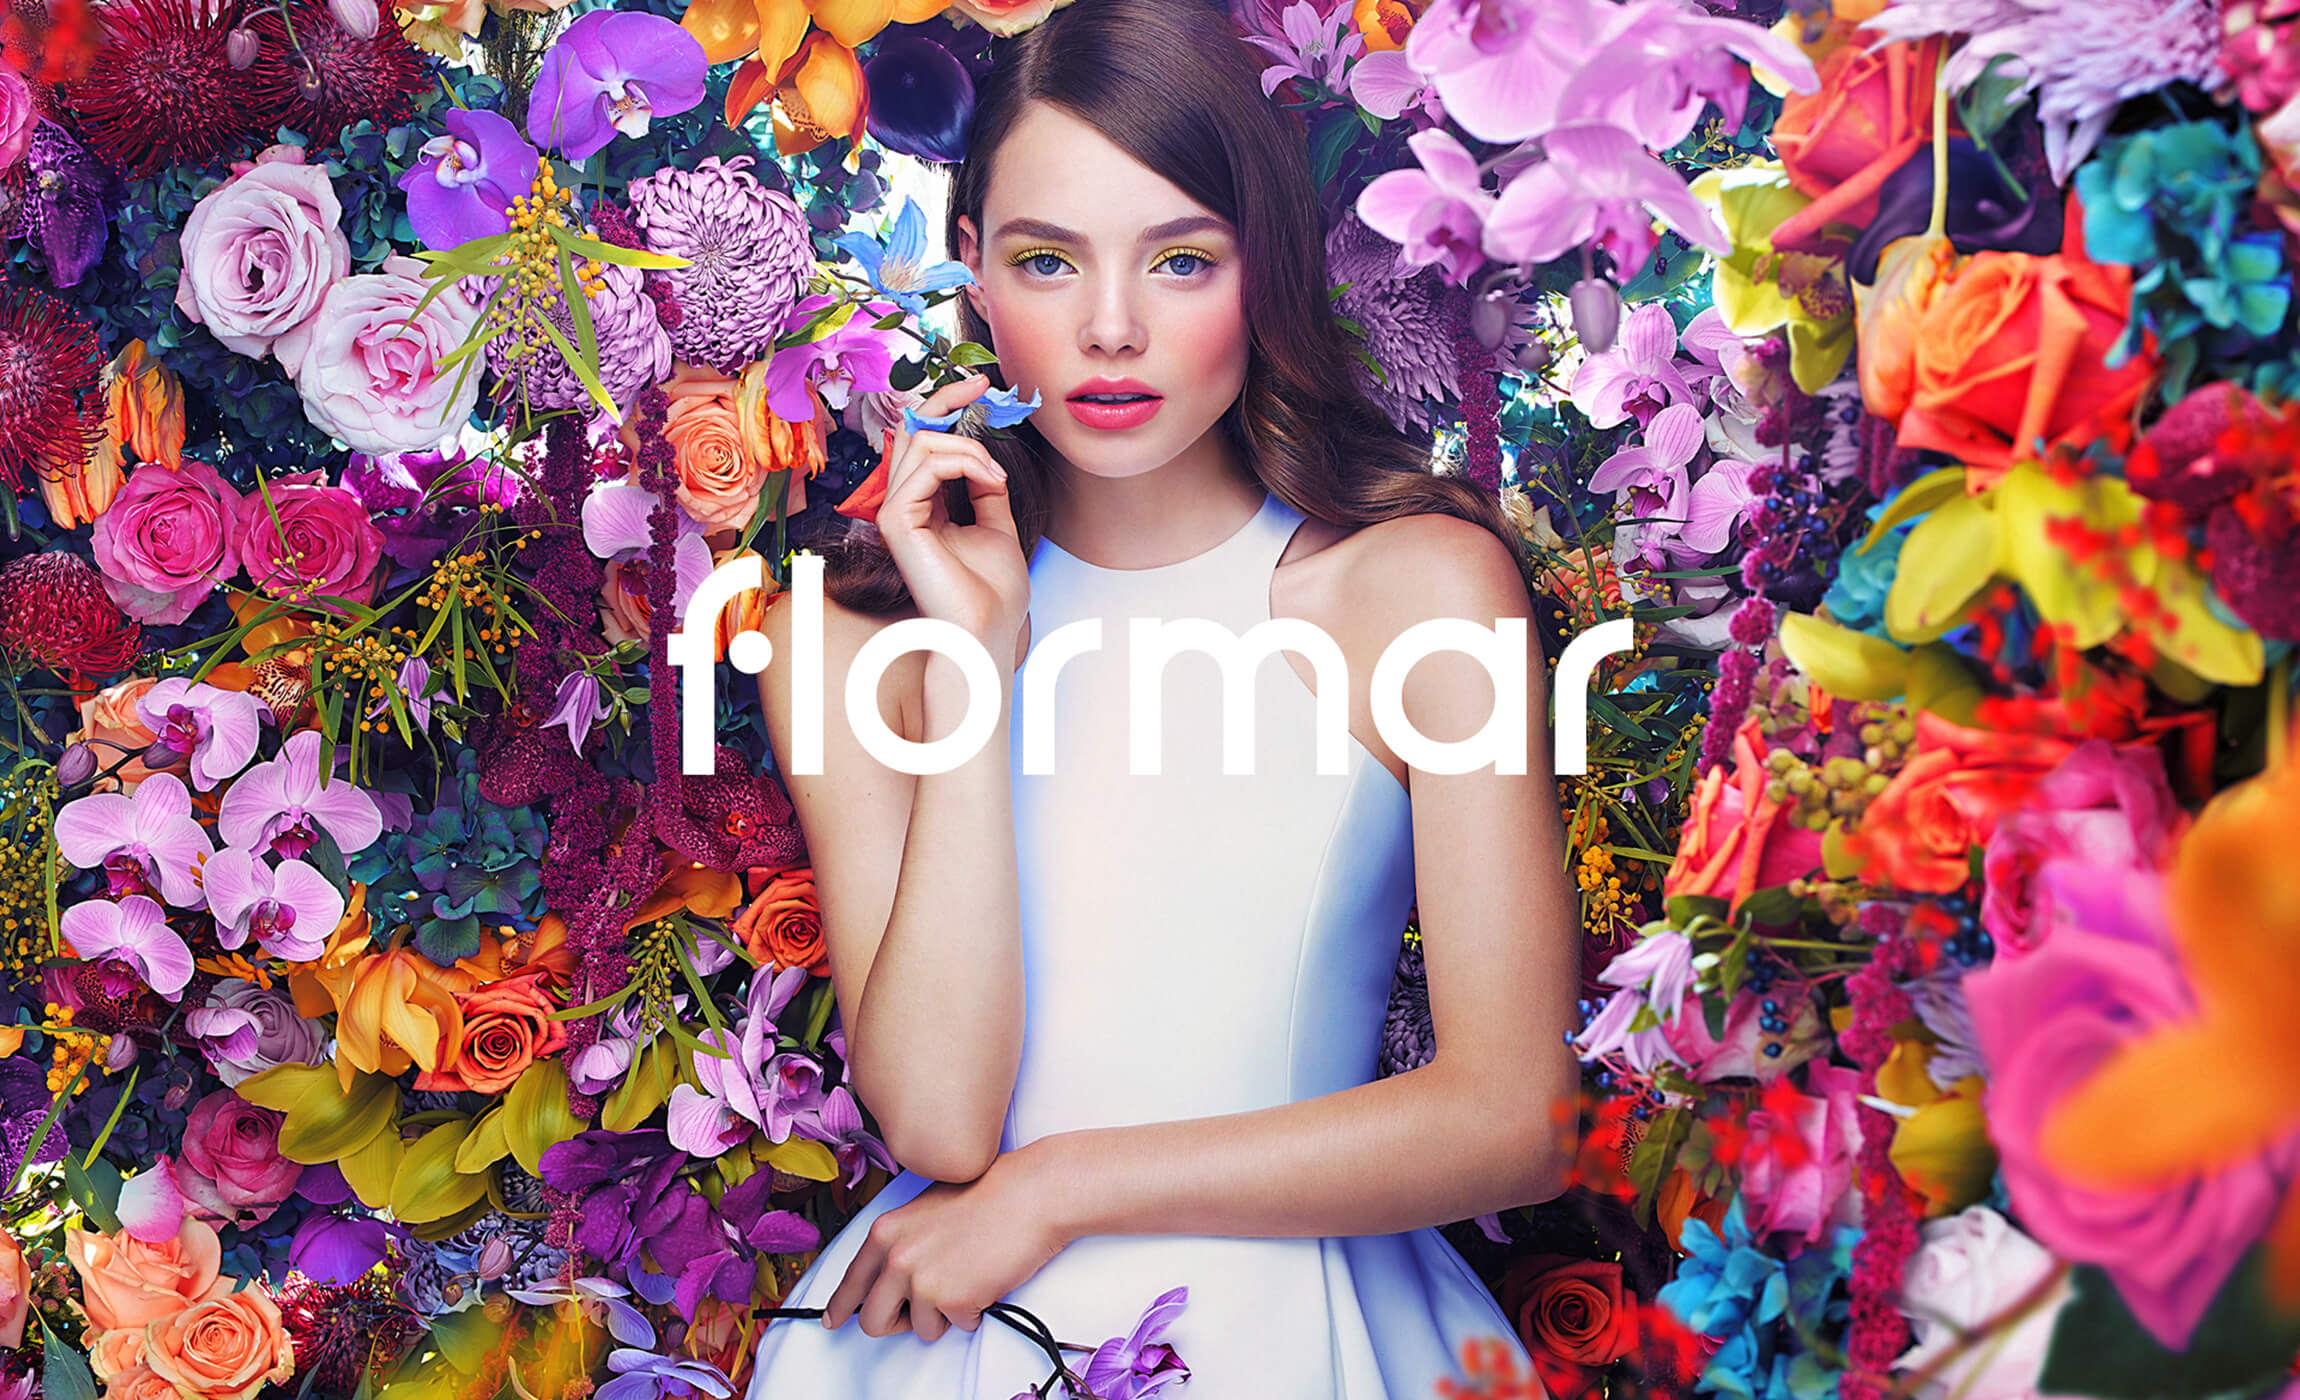 flormar_00